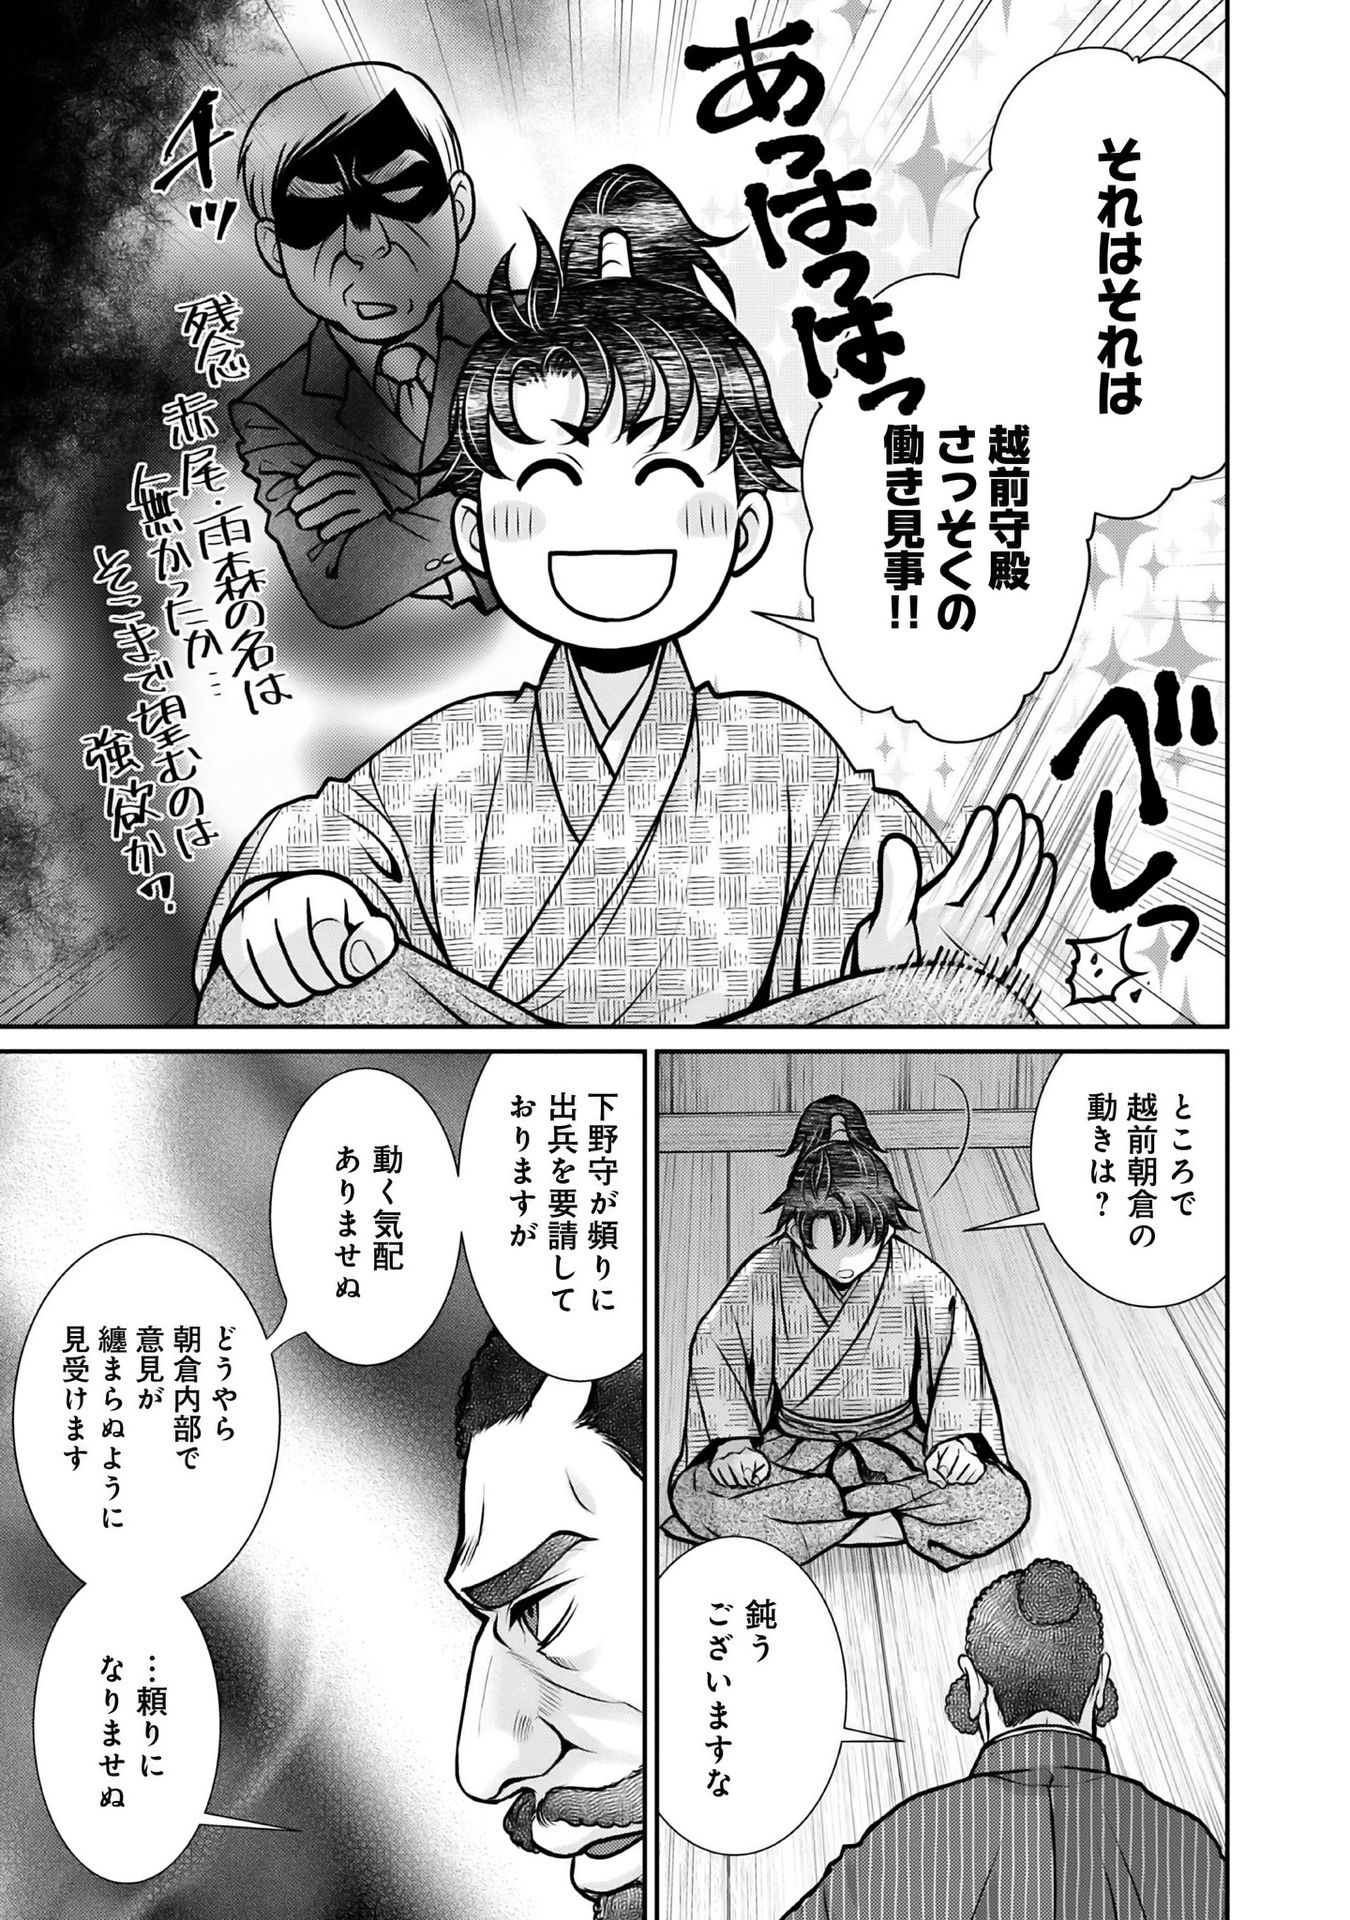 Afumi no Umi – Minamo ga Yureru Toki - Chapter 11 - Page 49